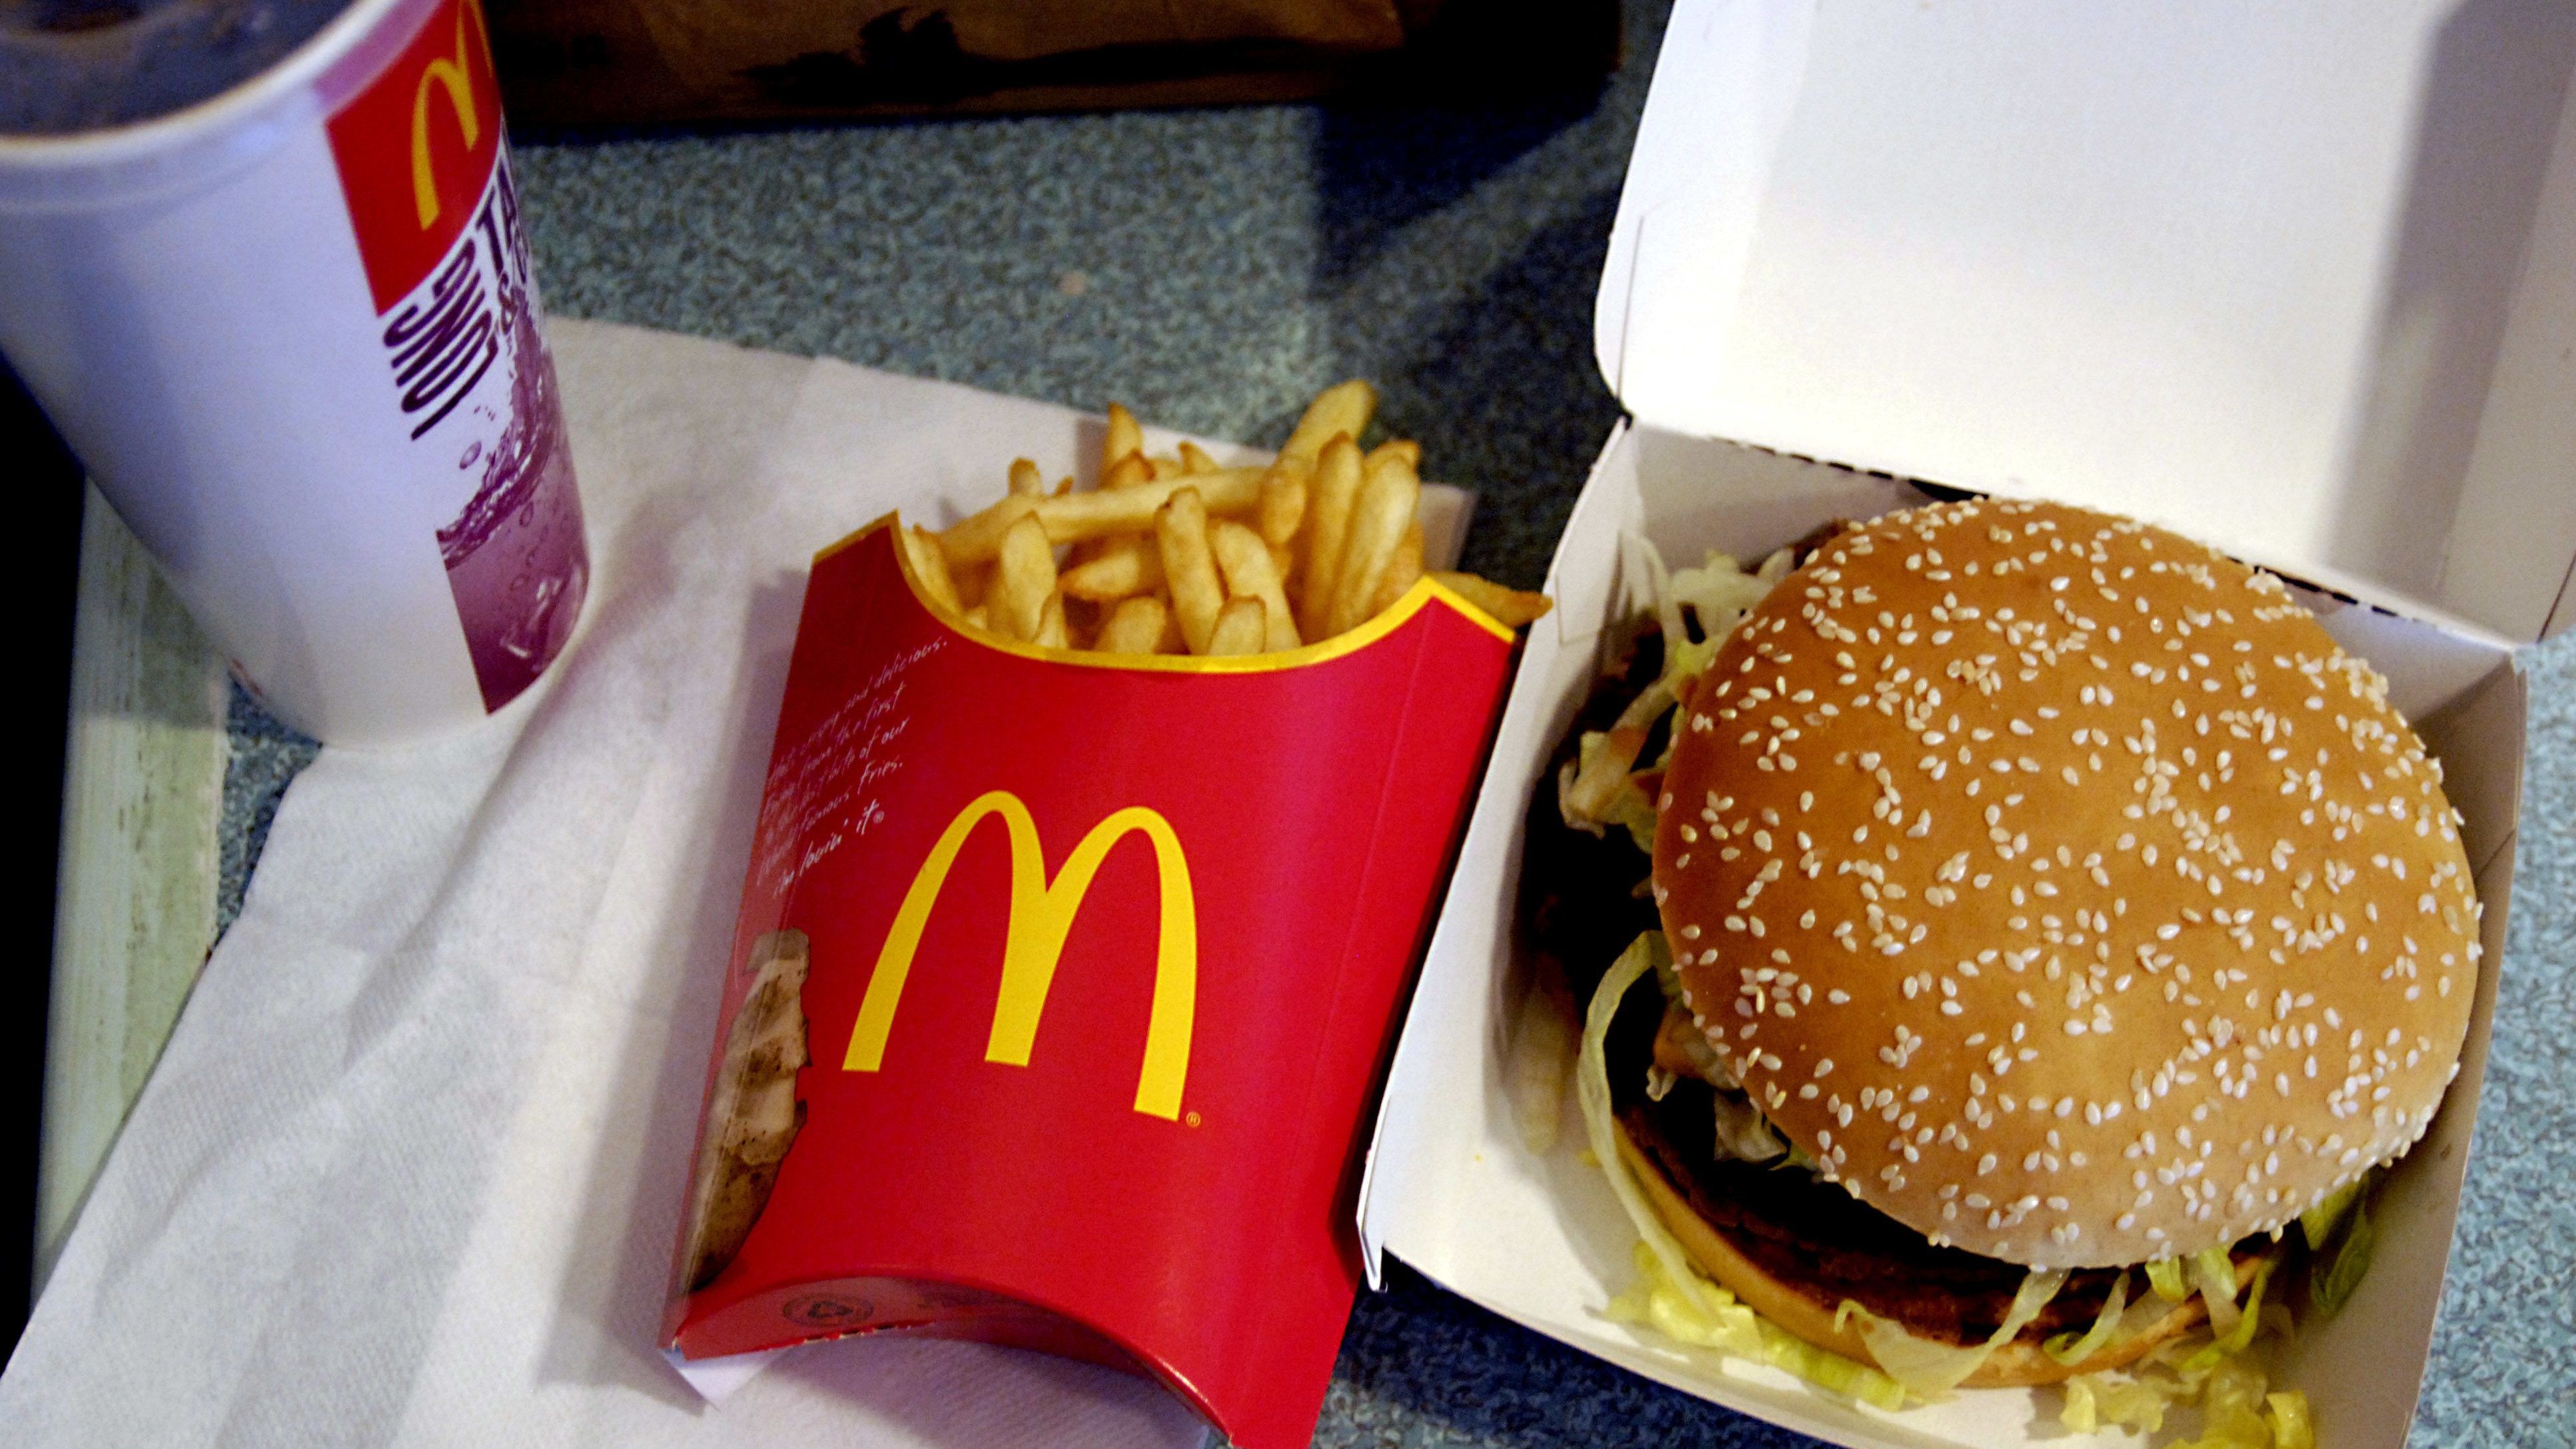 A McDonald’s szerint így egy kézben tartva meg tudunk enni egy egész menüt